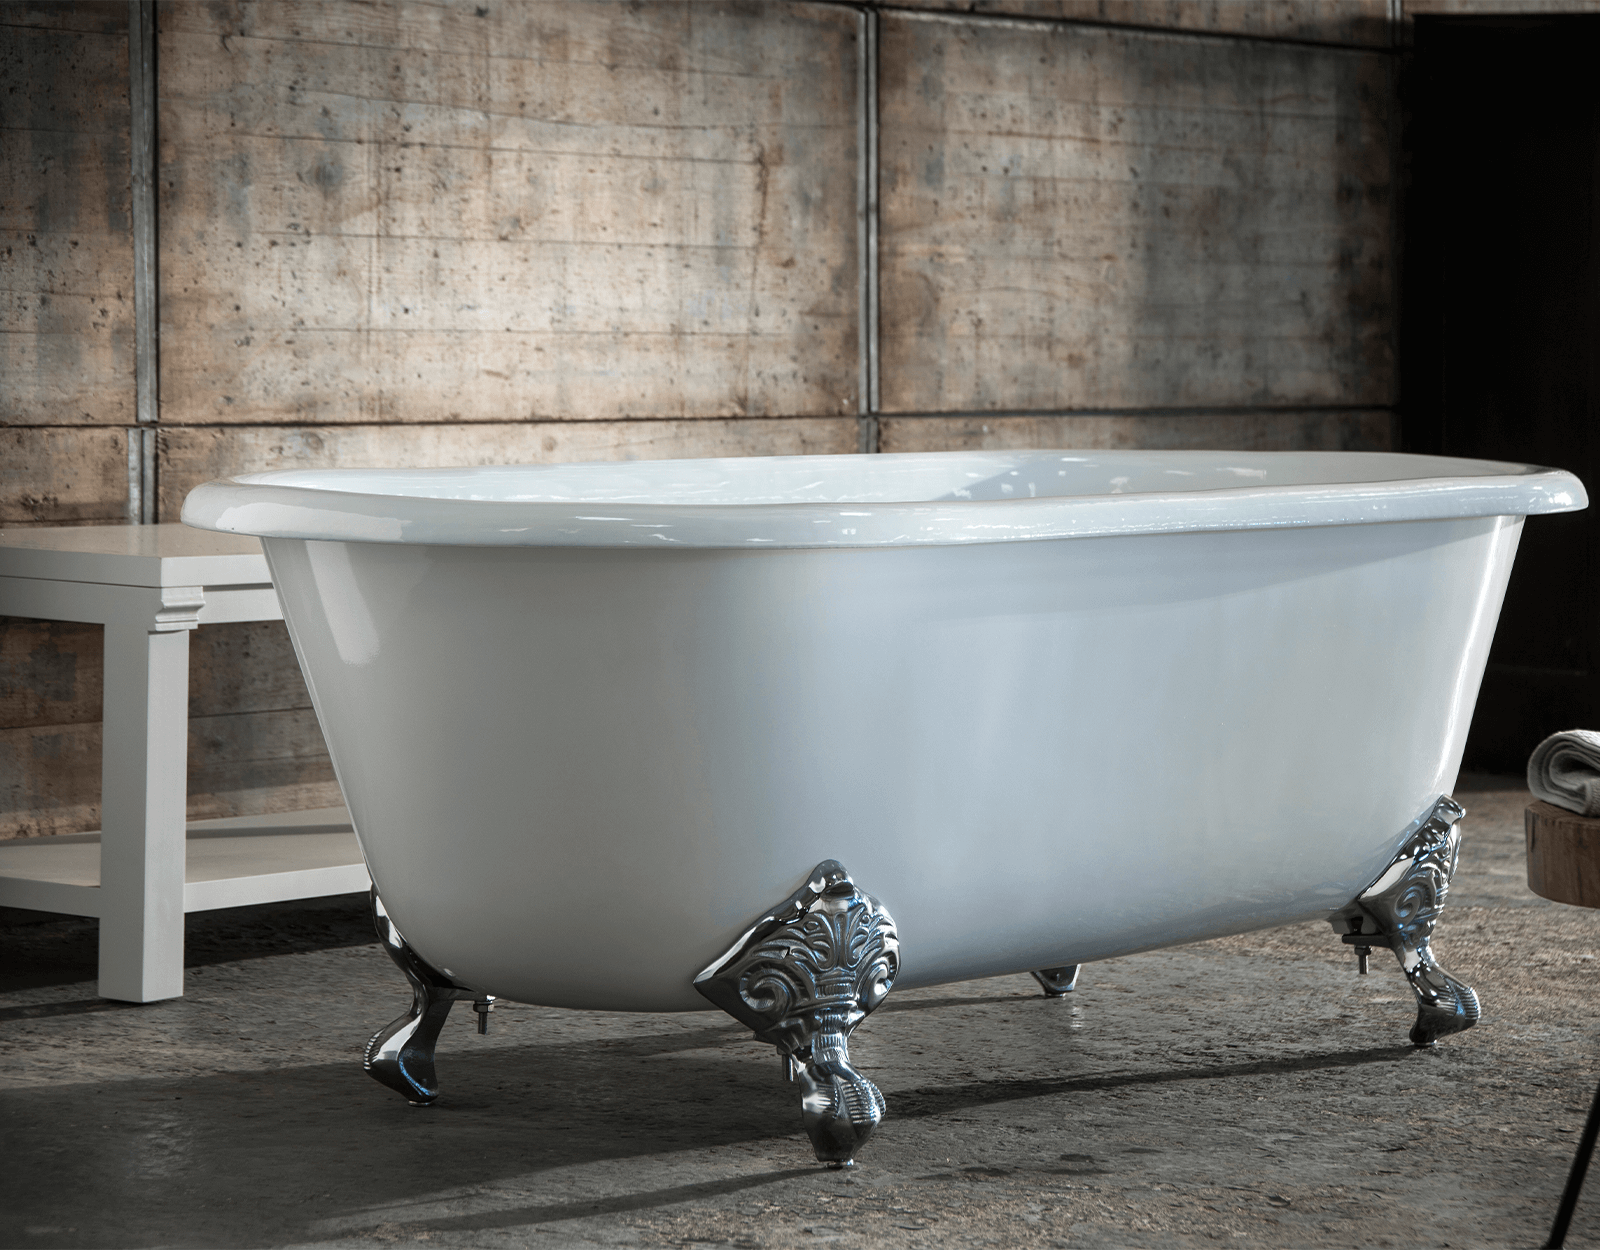 Voorganger poeder Vooraf Klassiek vrijstaand gietizjeren bad met pootset Cheverny 1850 -  TheClassicHouse - de klassieke badkamer en keuken specialist